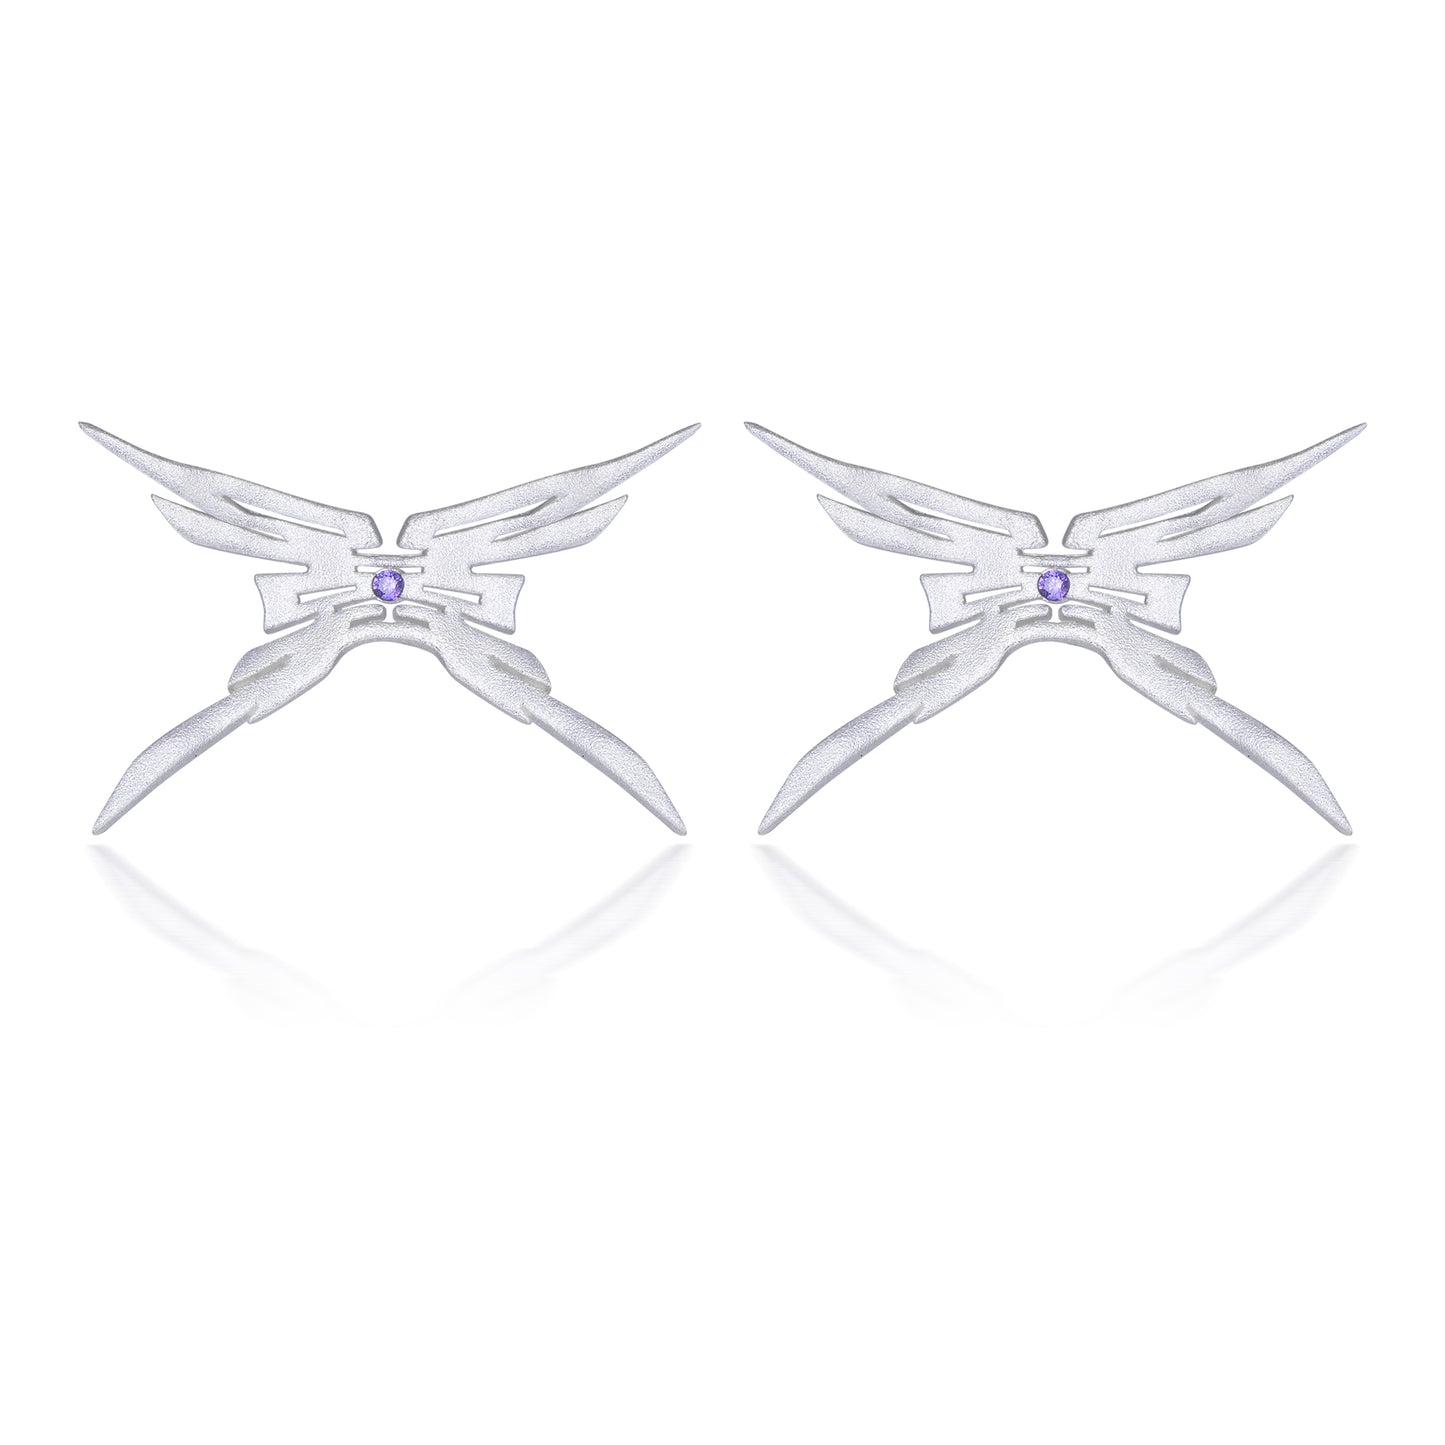 Rewind Whim ‘囍’ Butterfly Earrings